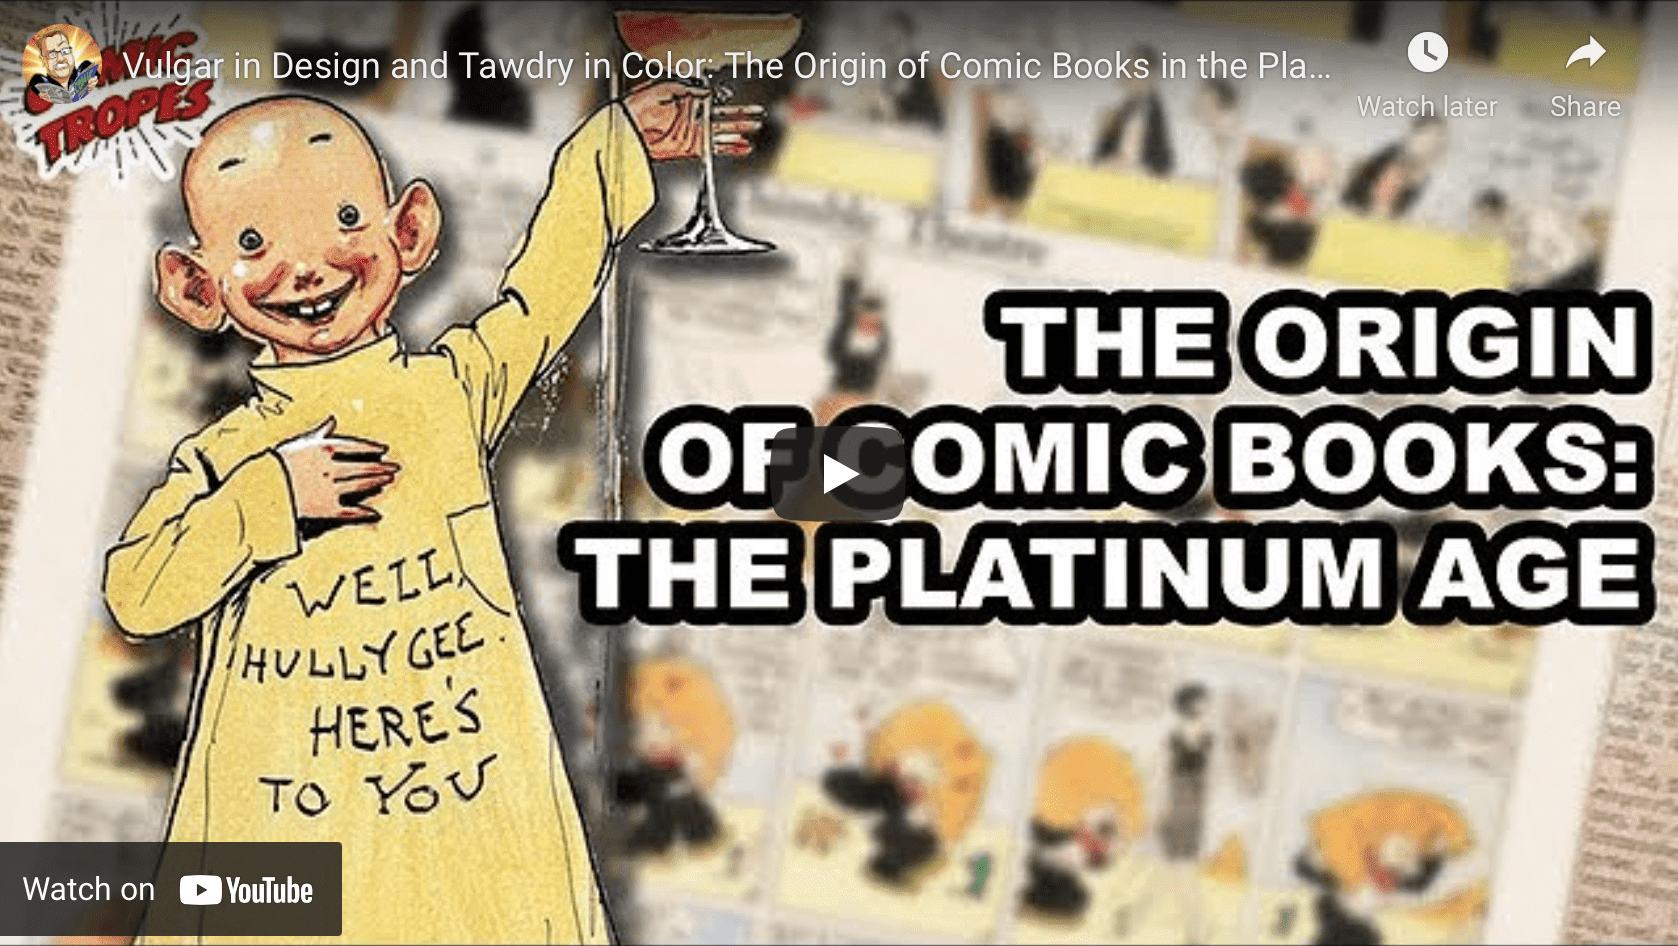 Platinum age of comics